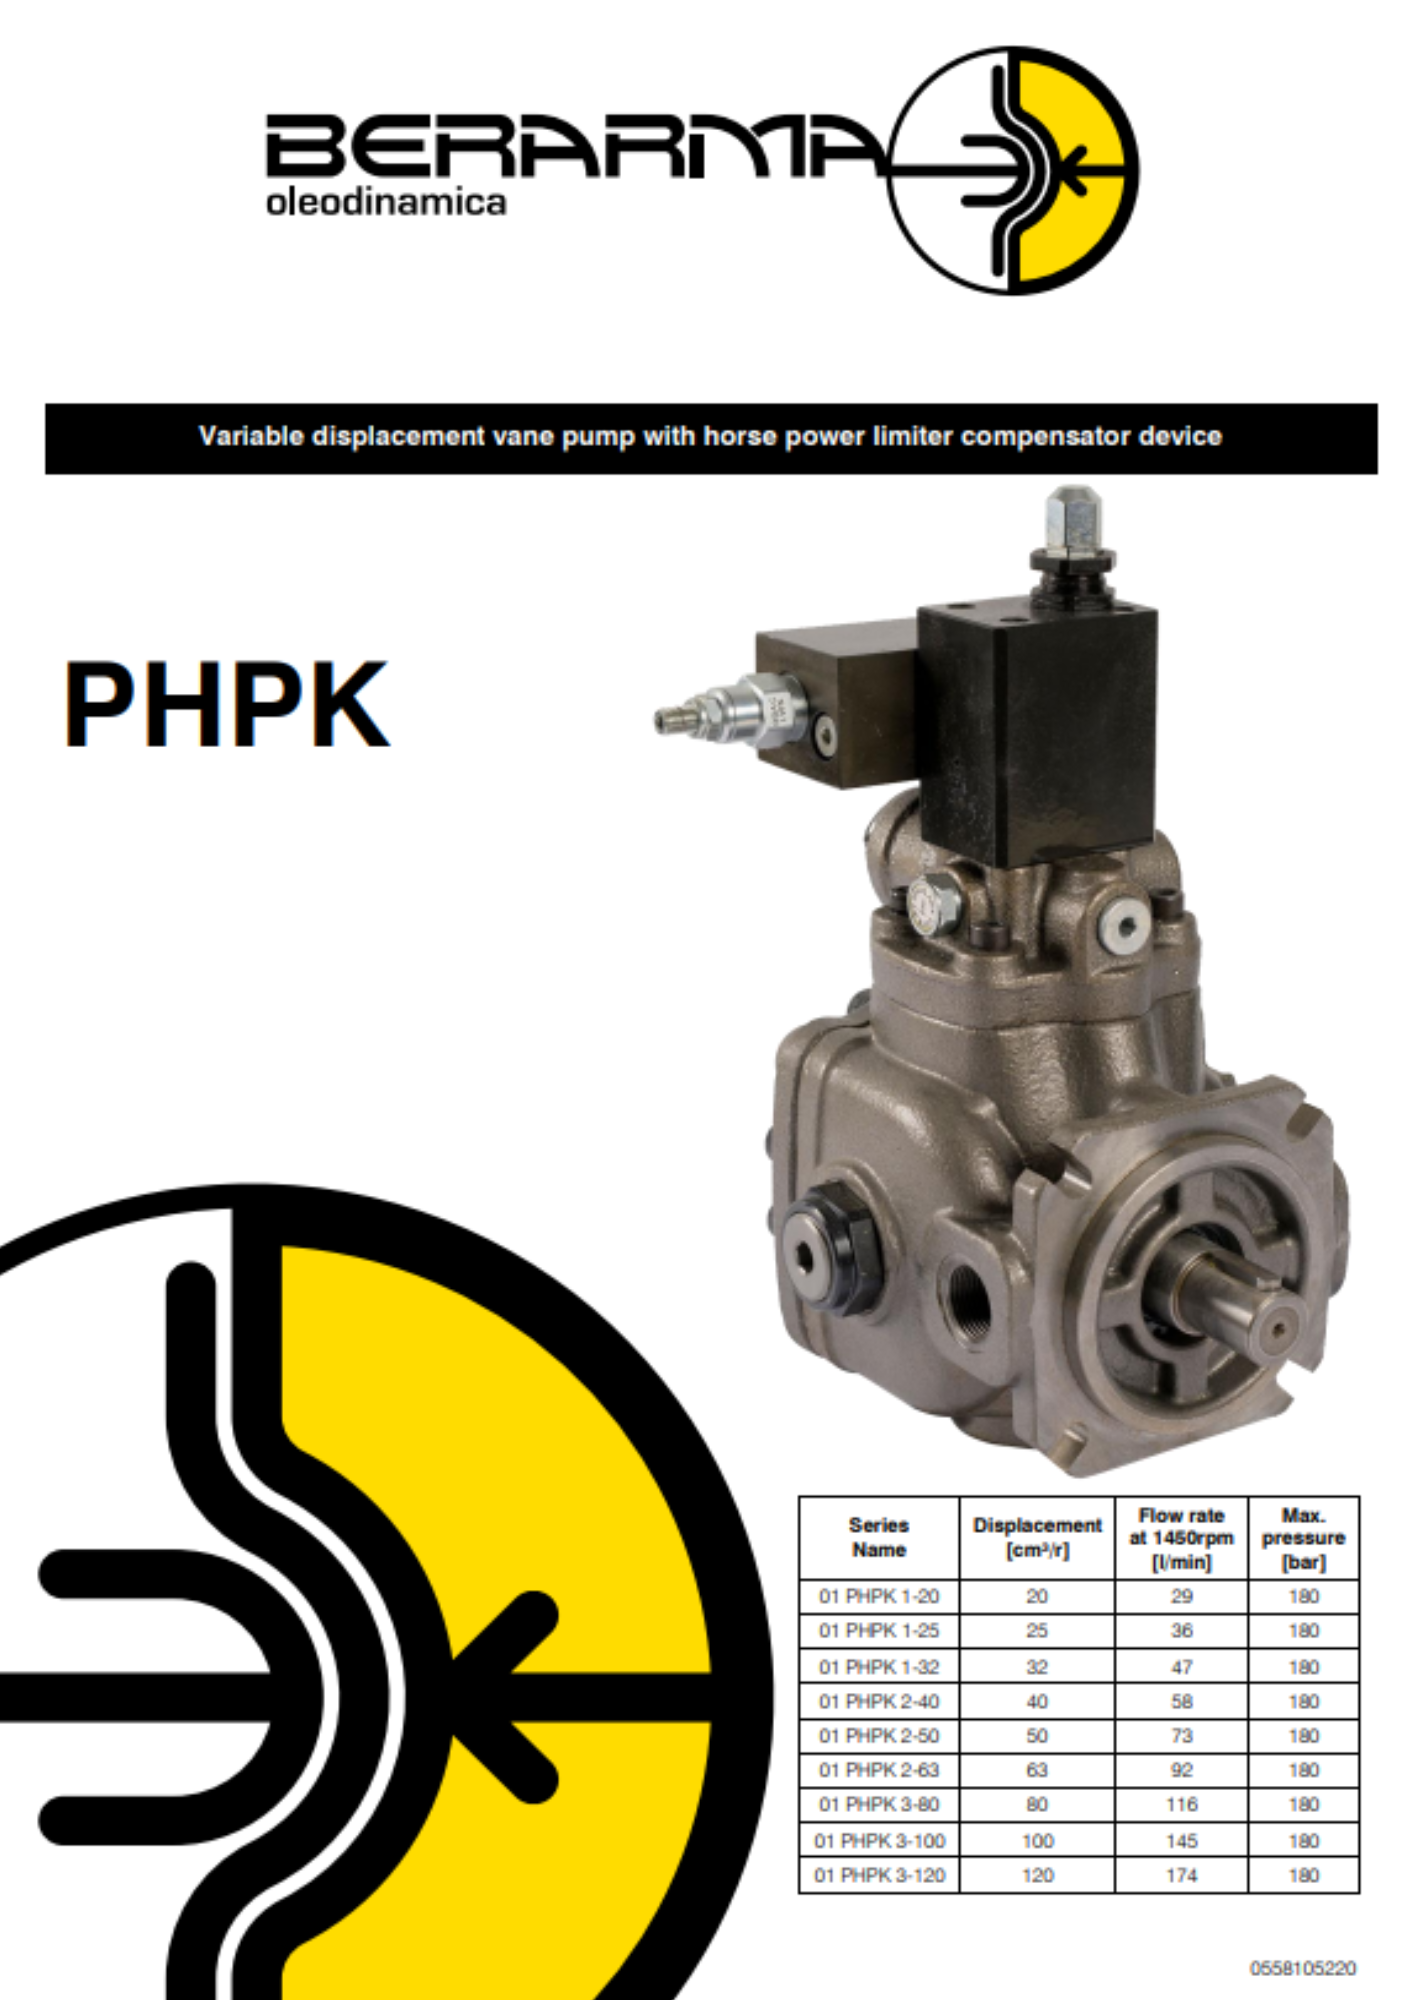 Berarma: PHPK variable displacement vane pumps